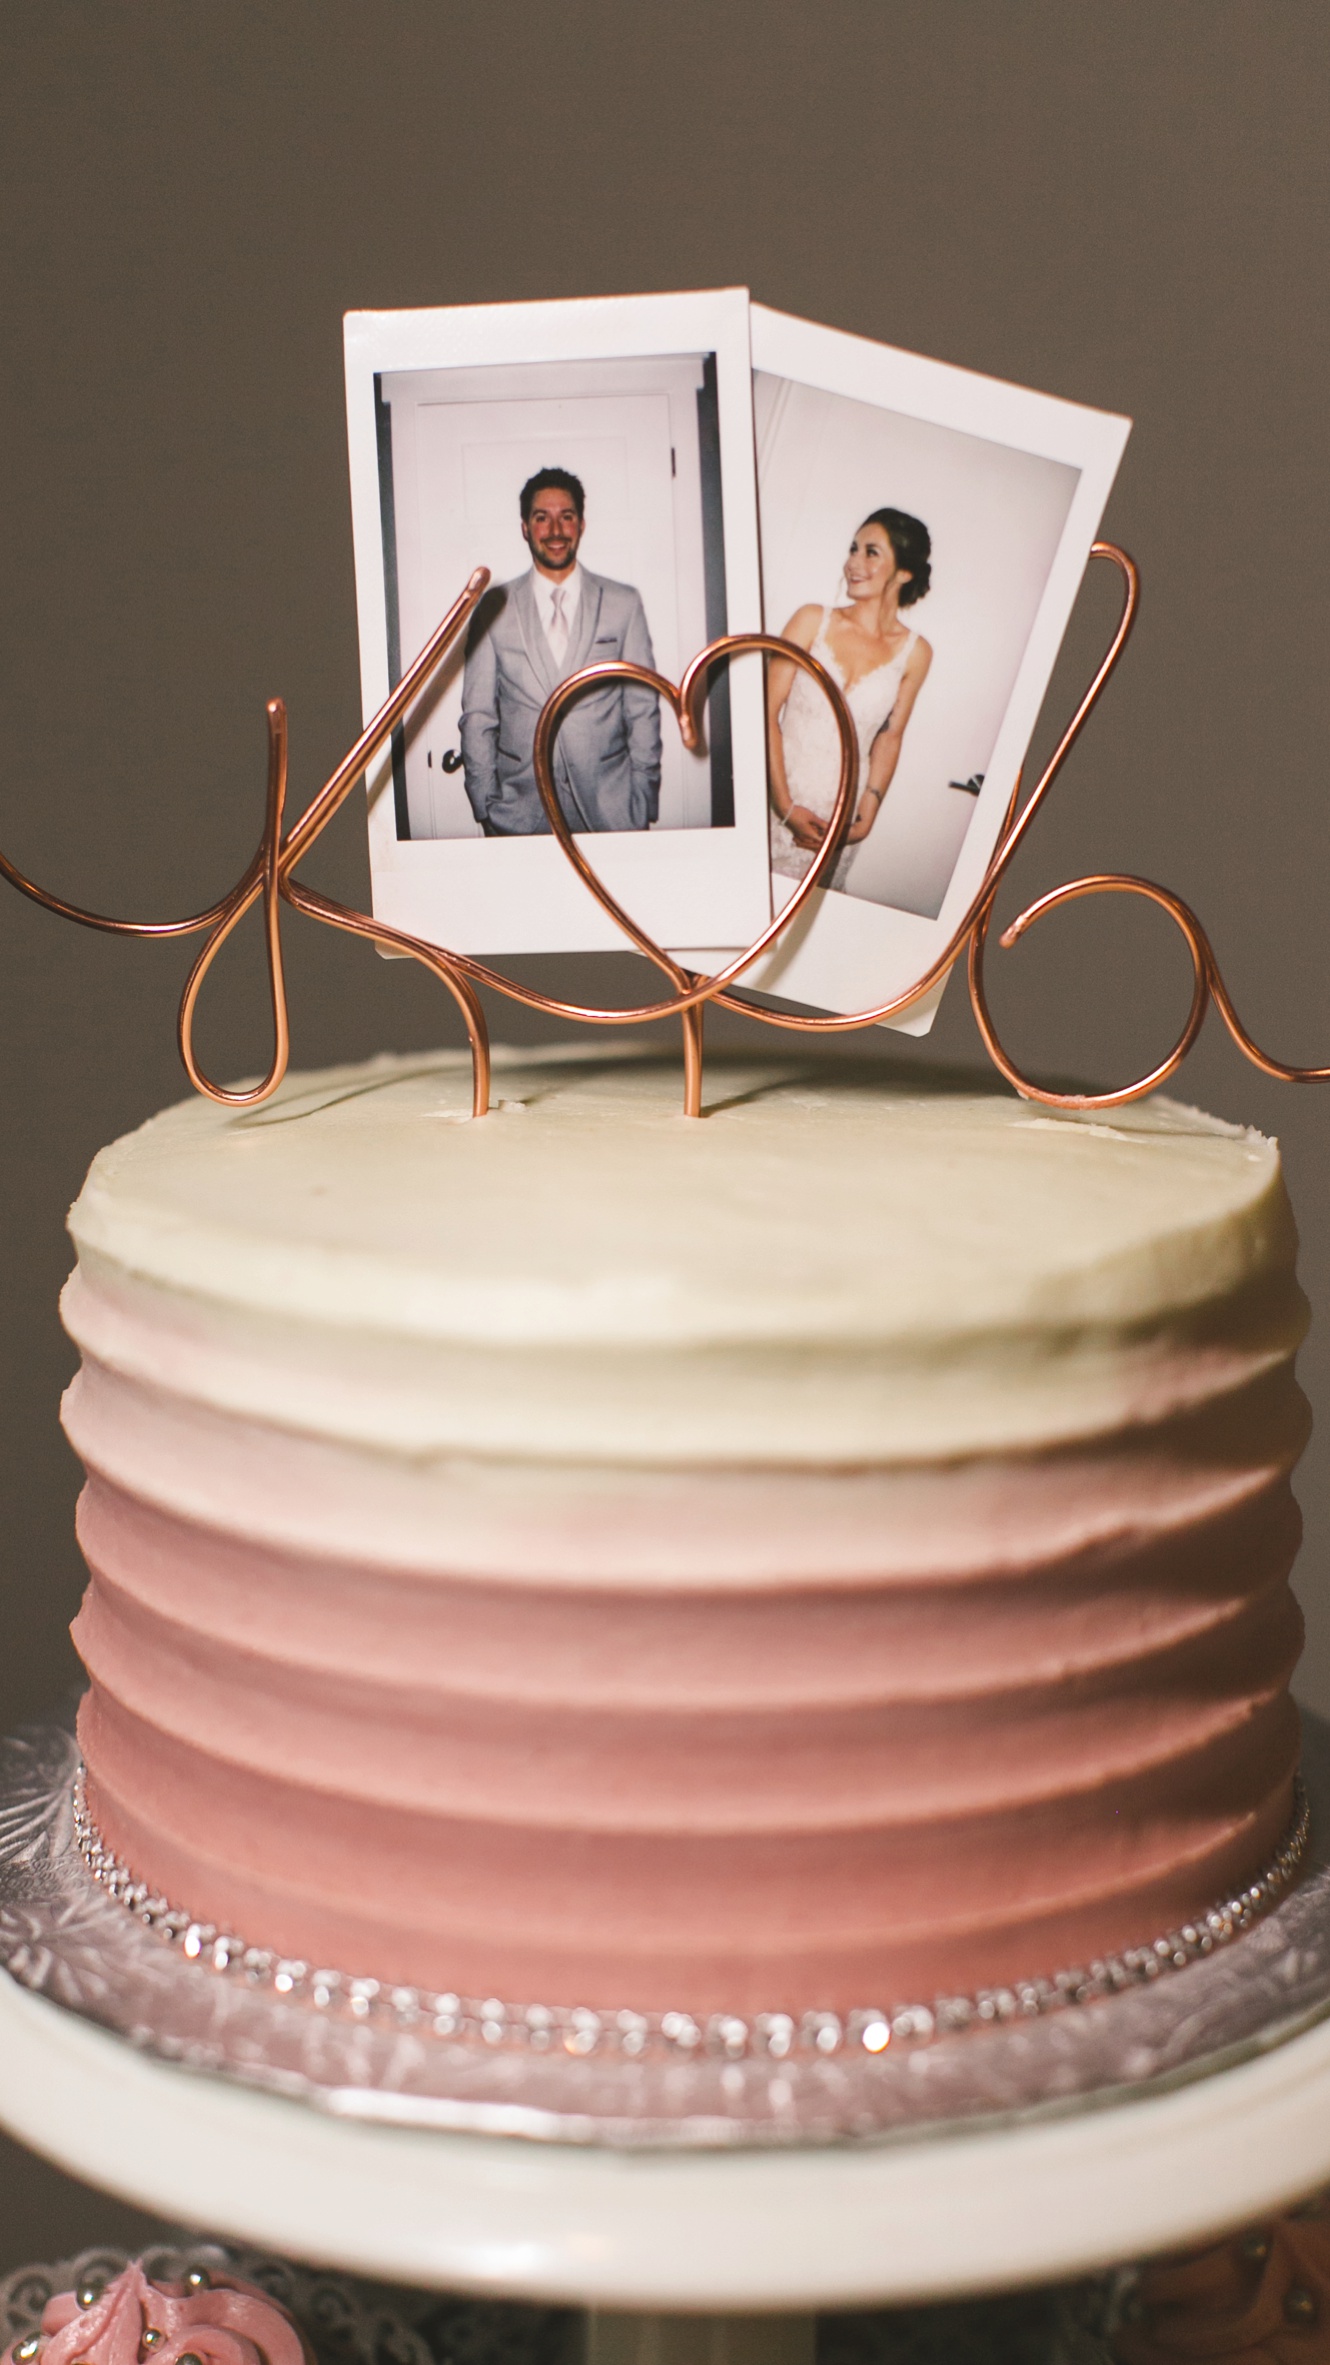 Wedding cake polaroid photo